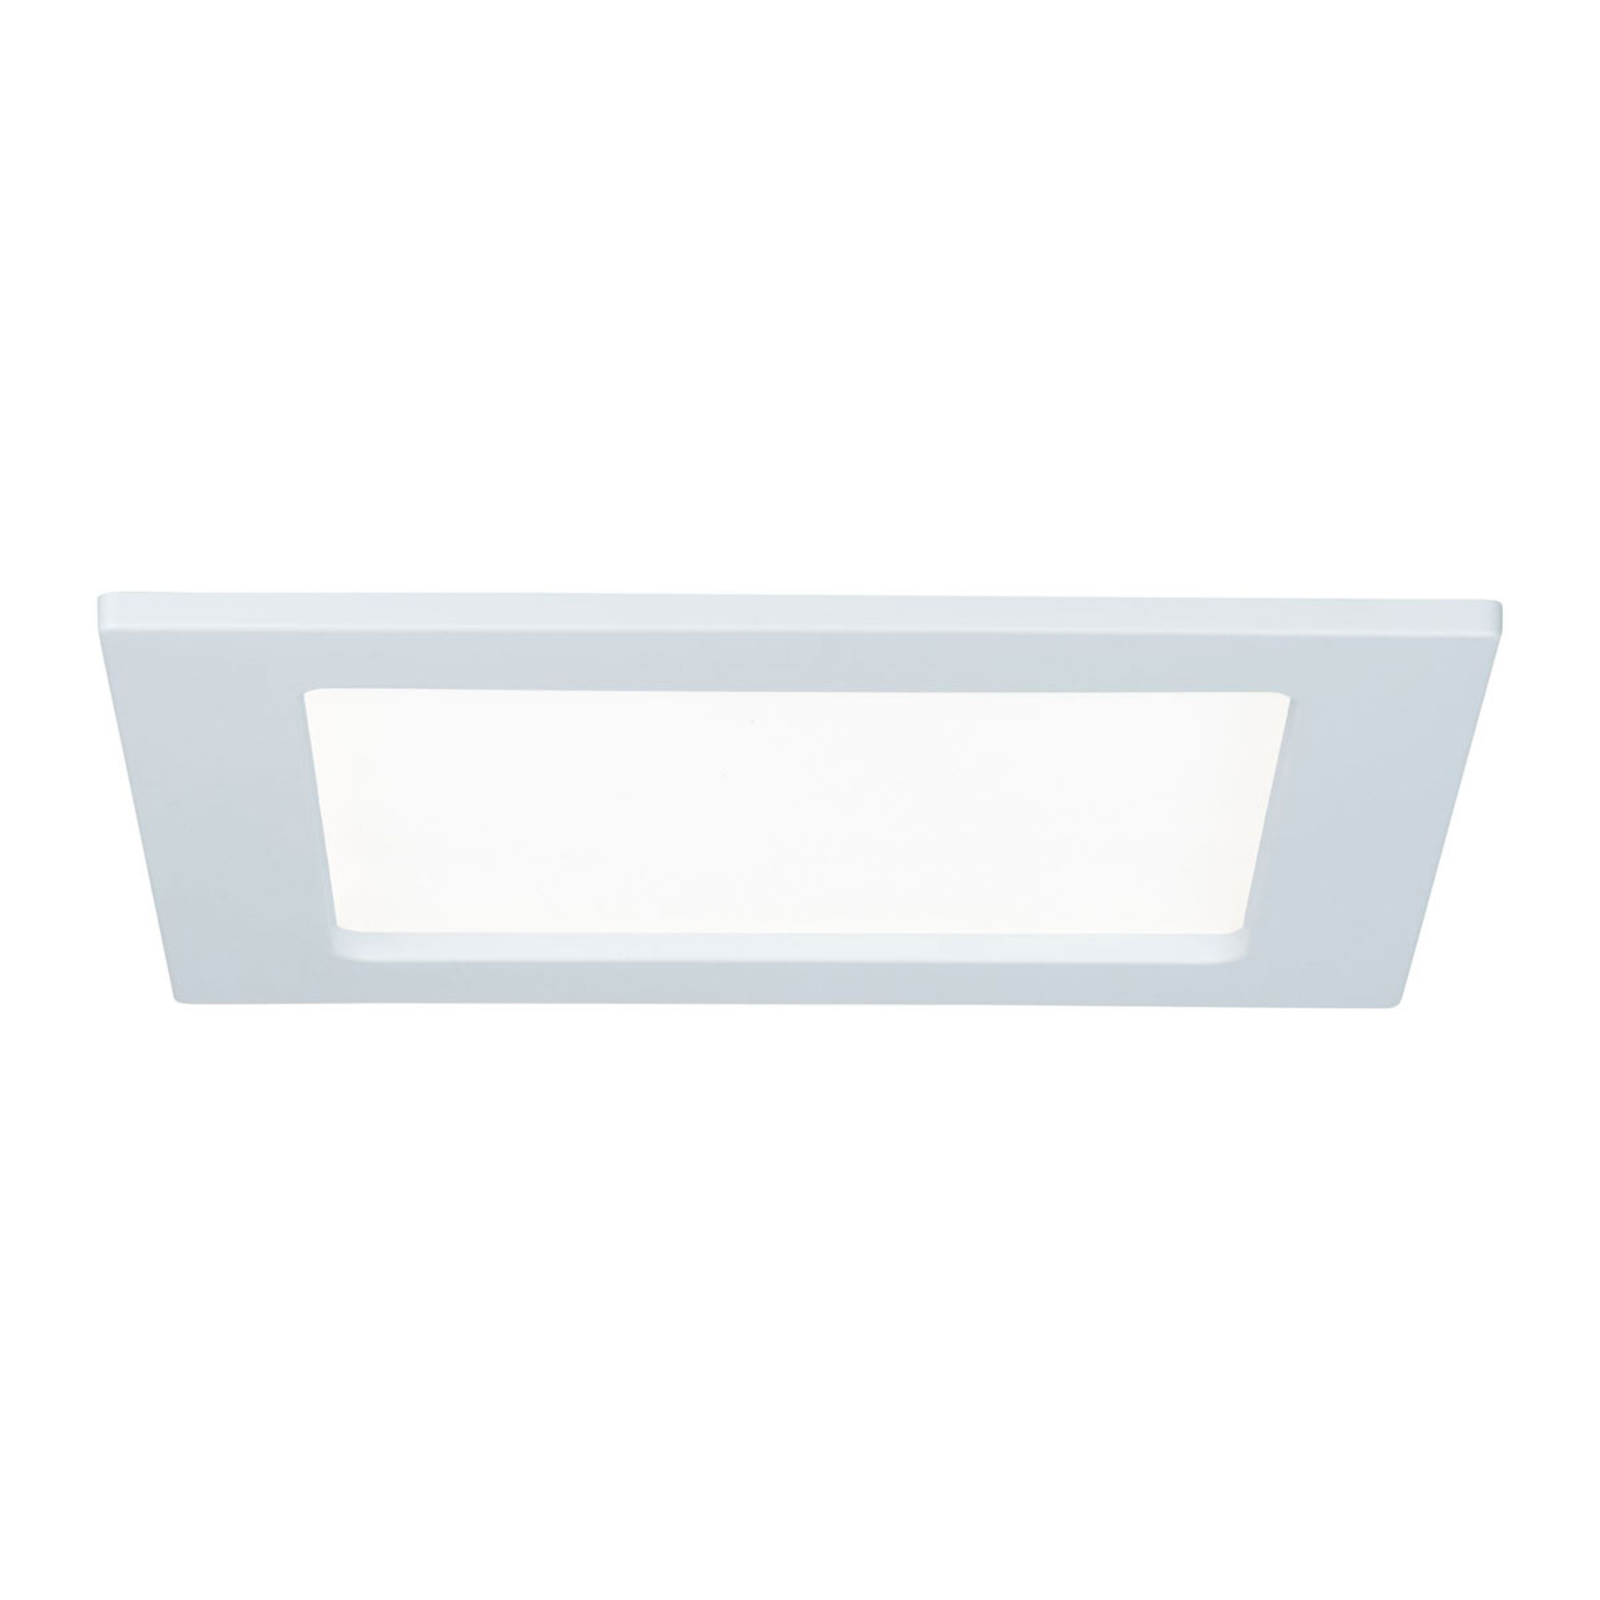 Paulmann LED panel, angular, 12 W, 4,000 K, white